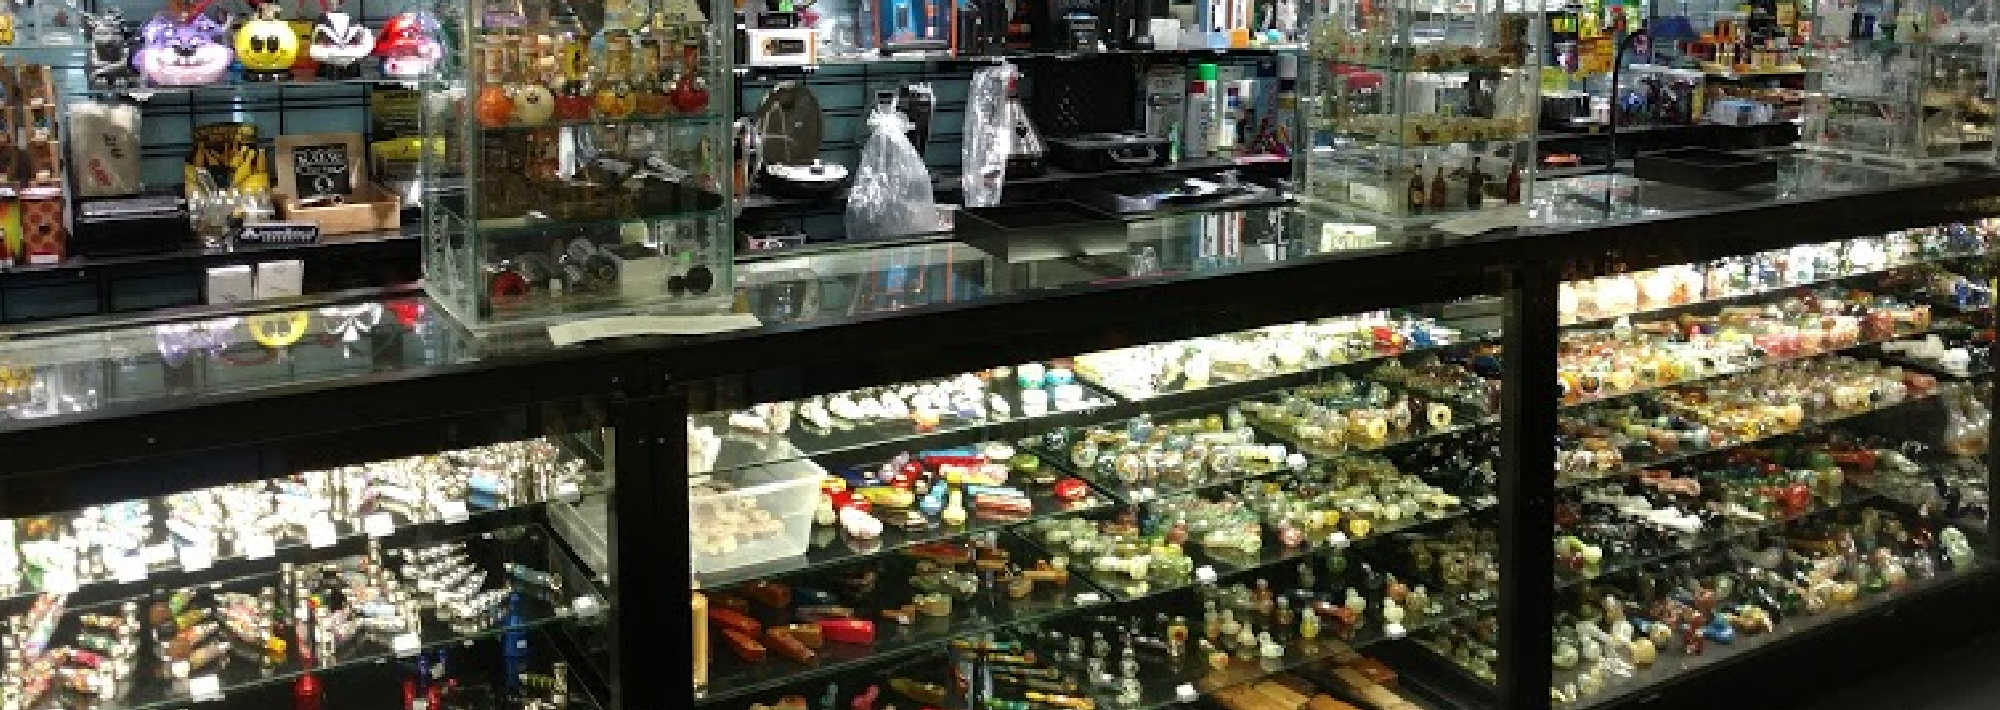 image of xo smoke shop in southfield michigan